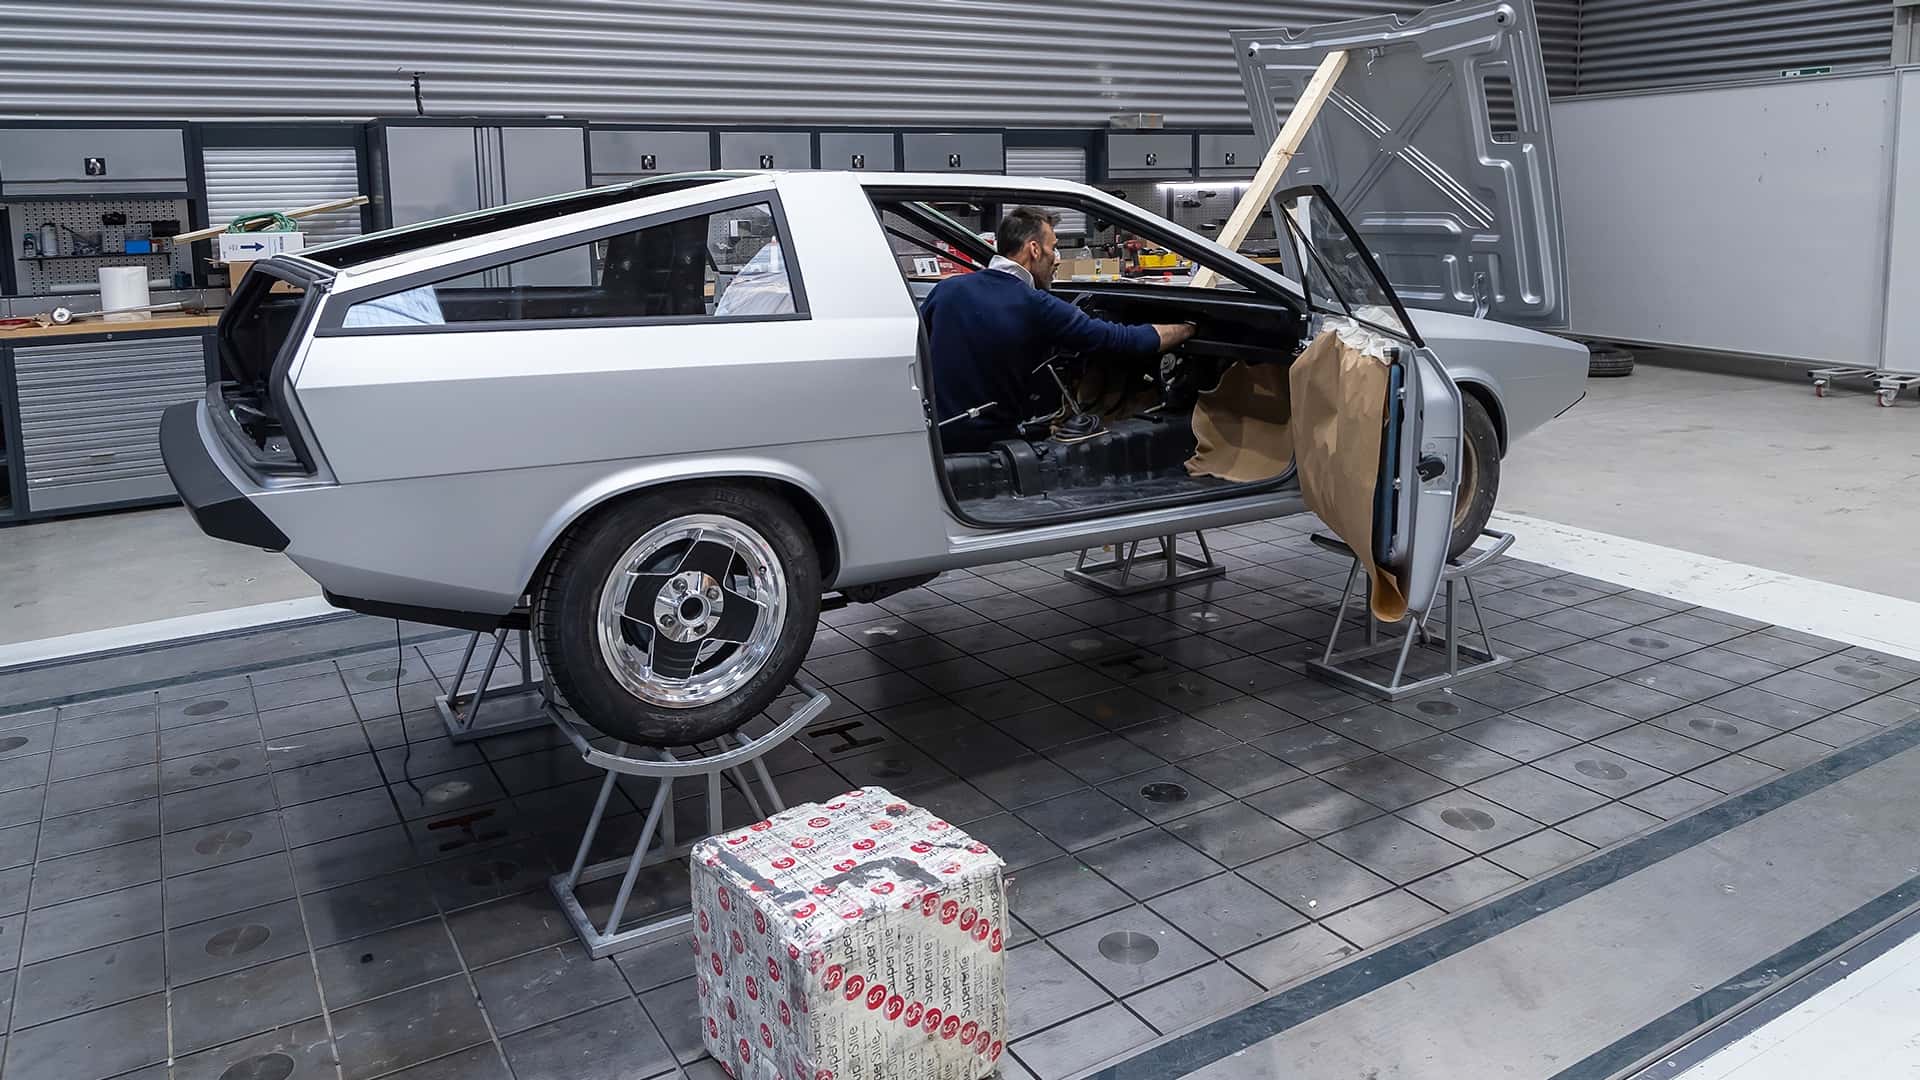 هيونداي تعيد إحياء سيارة بوني كوبيه الاختبارية الأيقونية في موديل عصري اختباري جديد 46